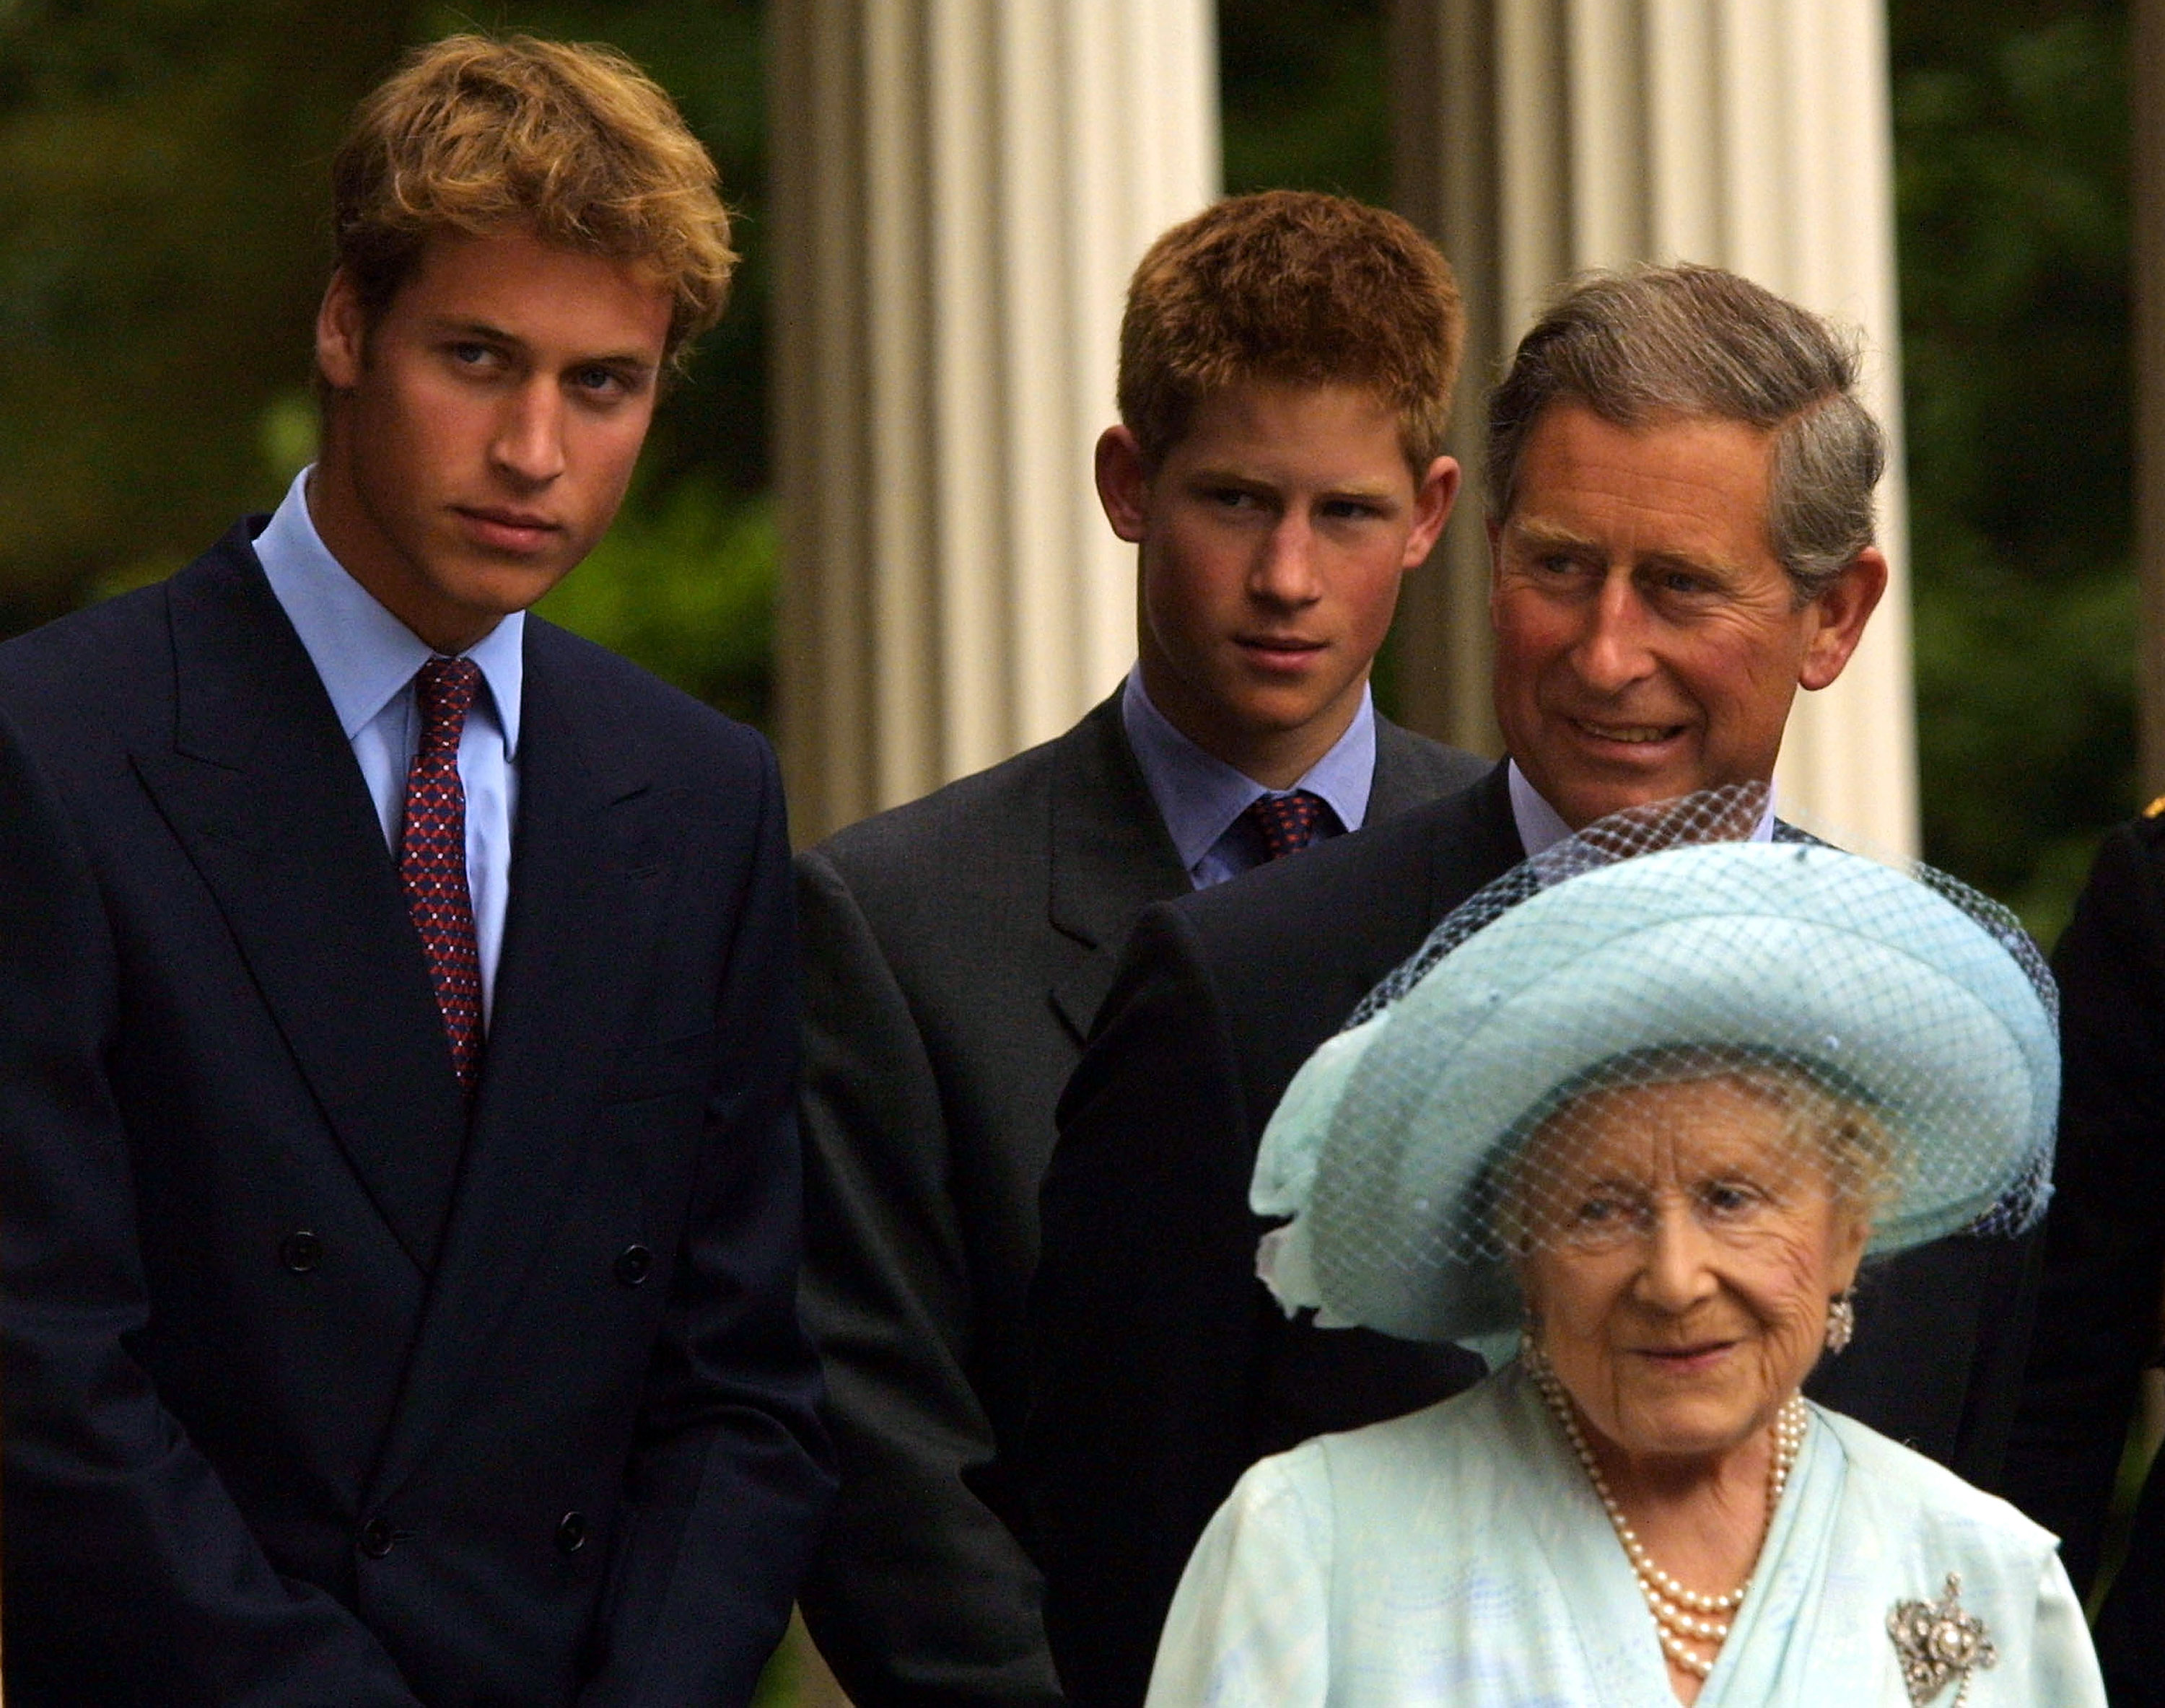 El príncipe William, el príncipe Harry, el rey Charles III y la reina madre, Elizabeth Bowes-Lyon durante las celebraciones de su 101 cumpleaños en Londres, Inglaterra, el 4 de agosto de 2001 | Fuente: Getty Images